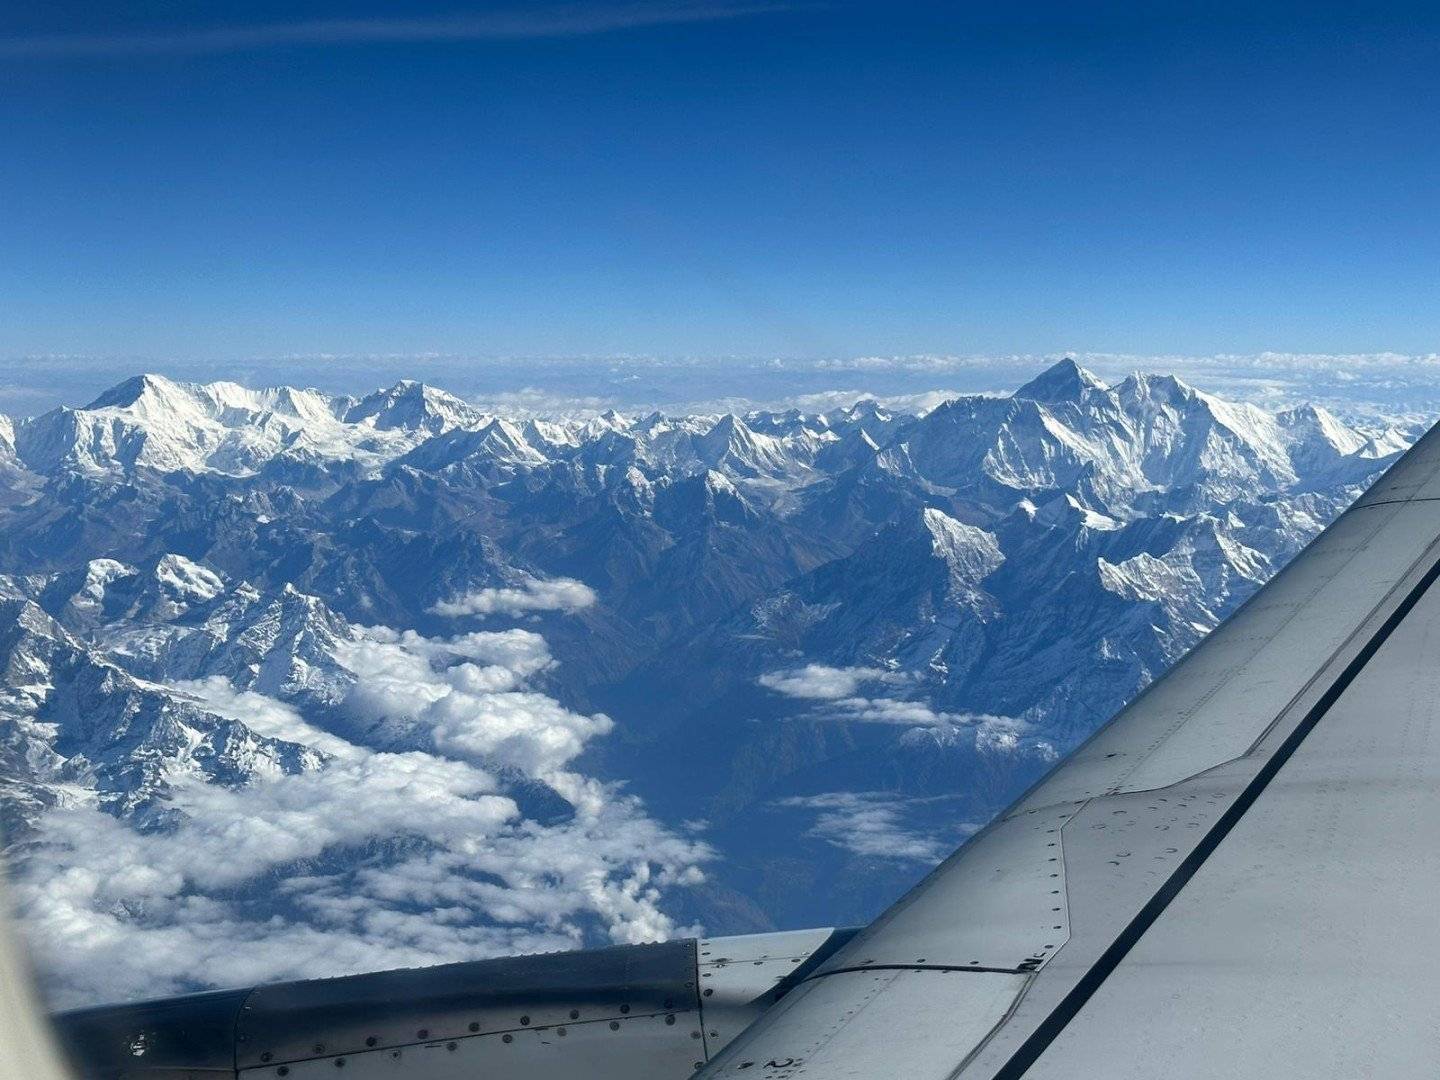 Arrivo a Kathmandu - 1300 m s.l.m.